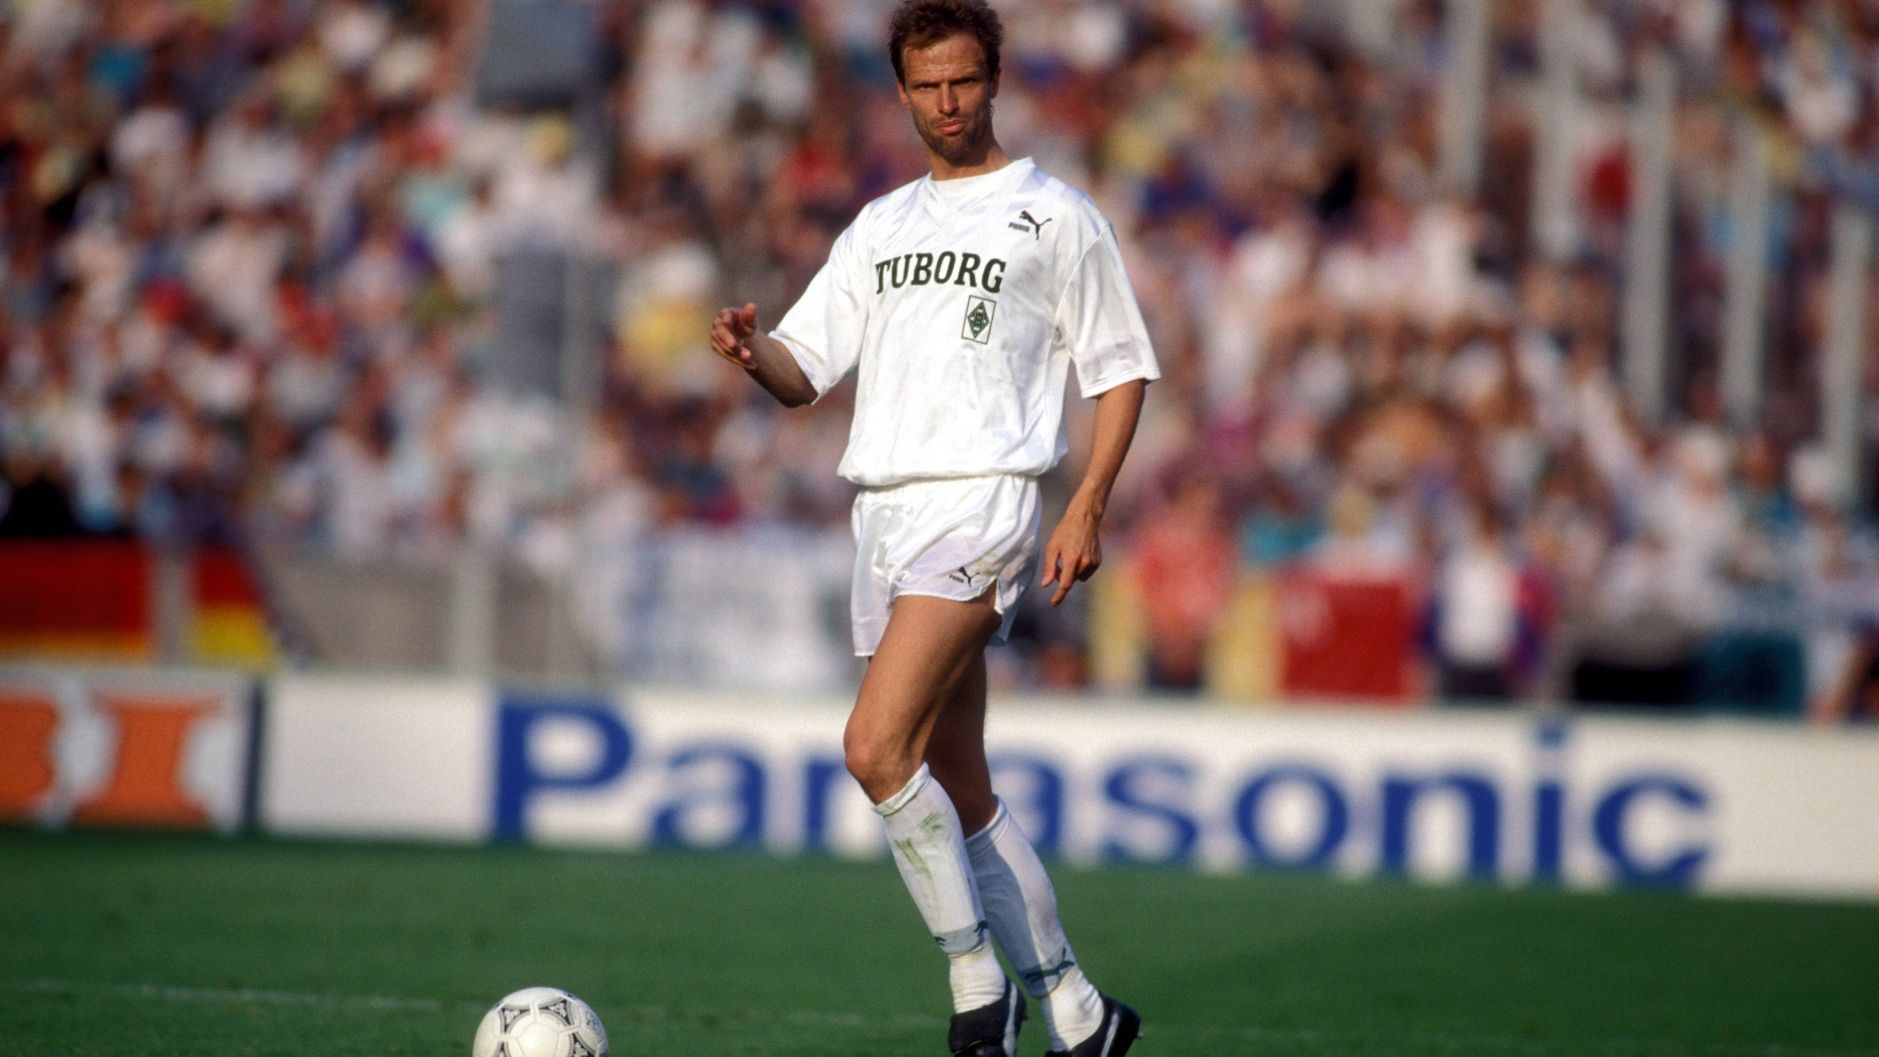 
                <strong>Platz 4: Holger Fach (Fortuna Düsseldorf/ Bayer Uerdingen/ Borussia Mönchengladbach/ Bayer Leverkusen) - 16 Spielzeiten</strong><br>
                &#x2022; <strong>Zeitraum:</strong> 1981/82 – 1996/97<br>&#x2022; <strong>Tore:</strong> 67<br>
              